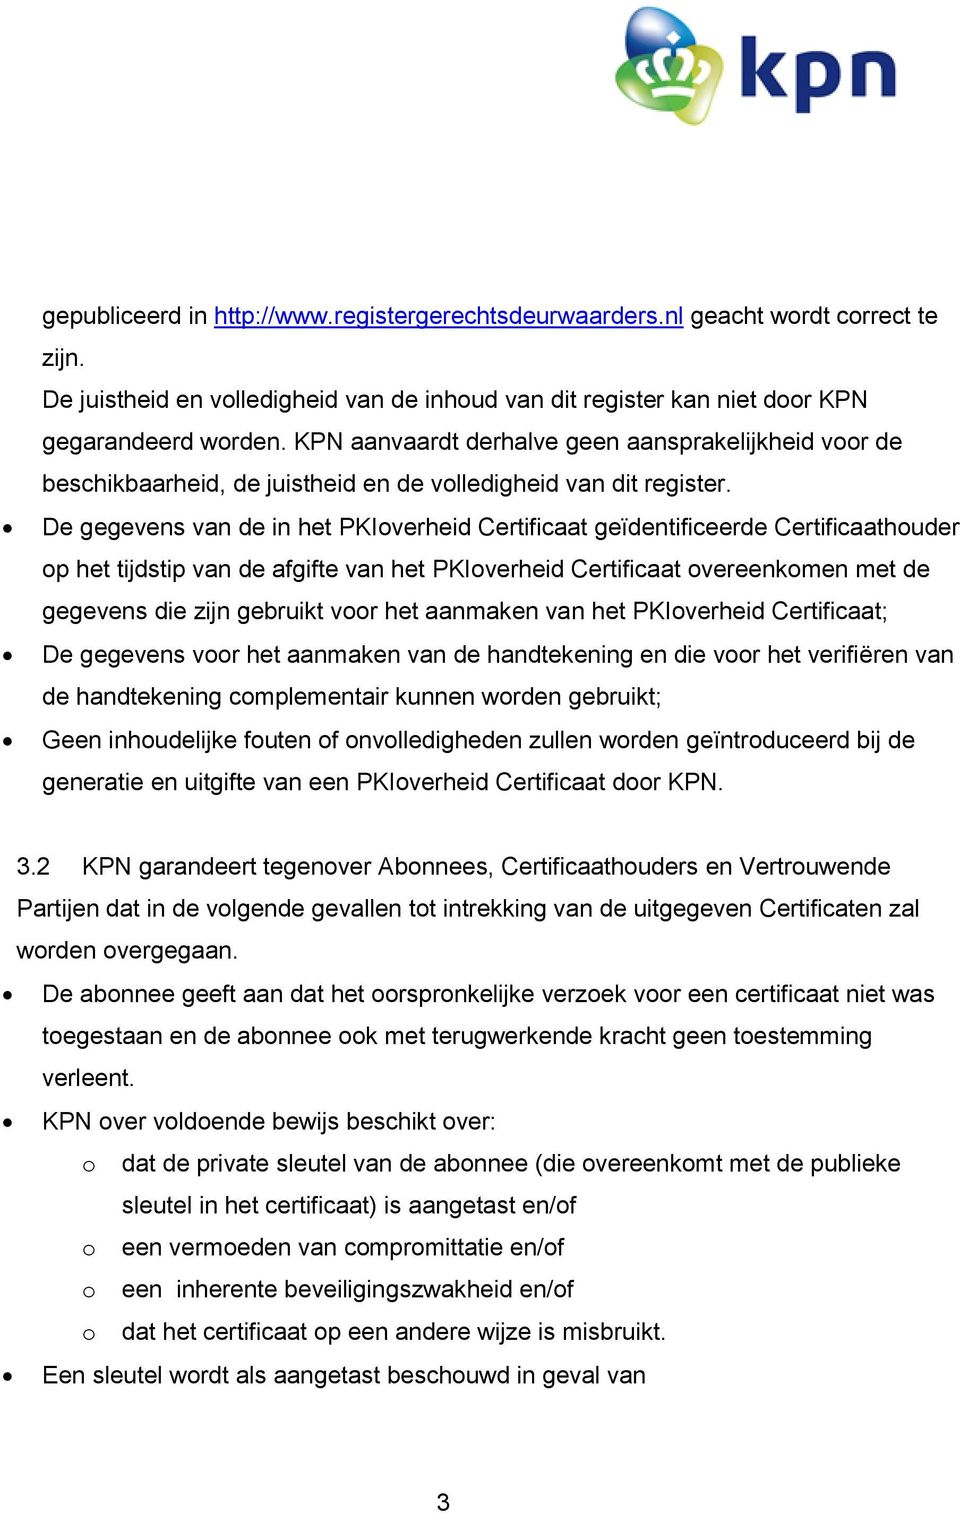 De gegevens van de in het PKIoverheid Certificaat geïdentificeerde Certificaathouder op het tijdstip van de afgifte van het PKIoverheid Certificaat overeenkomen met de gegevens die zijn gebruikt voor